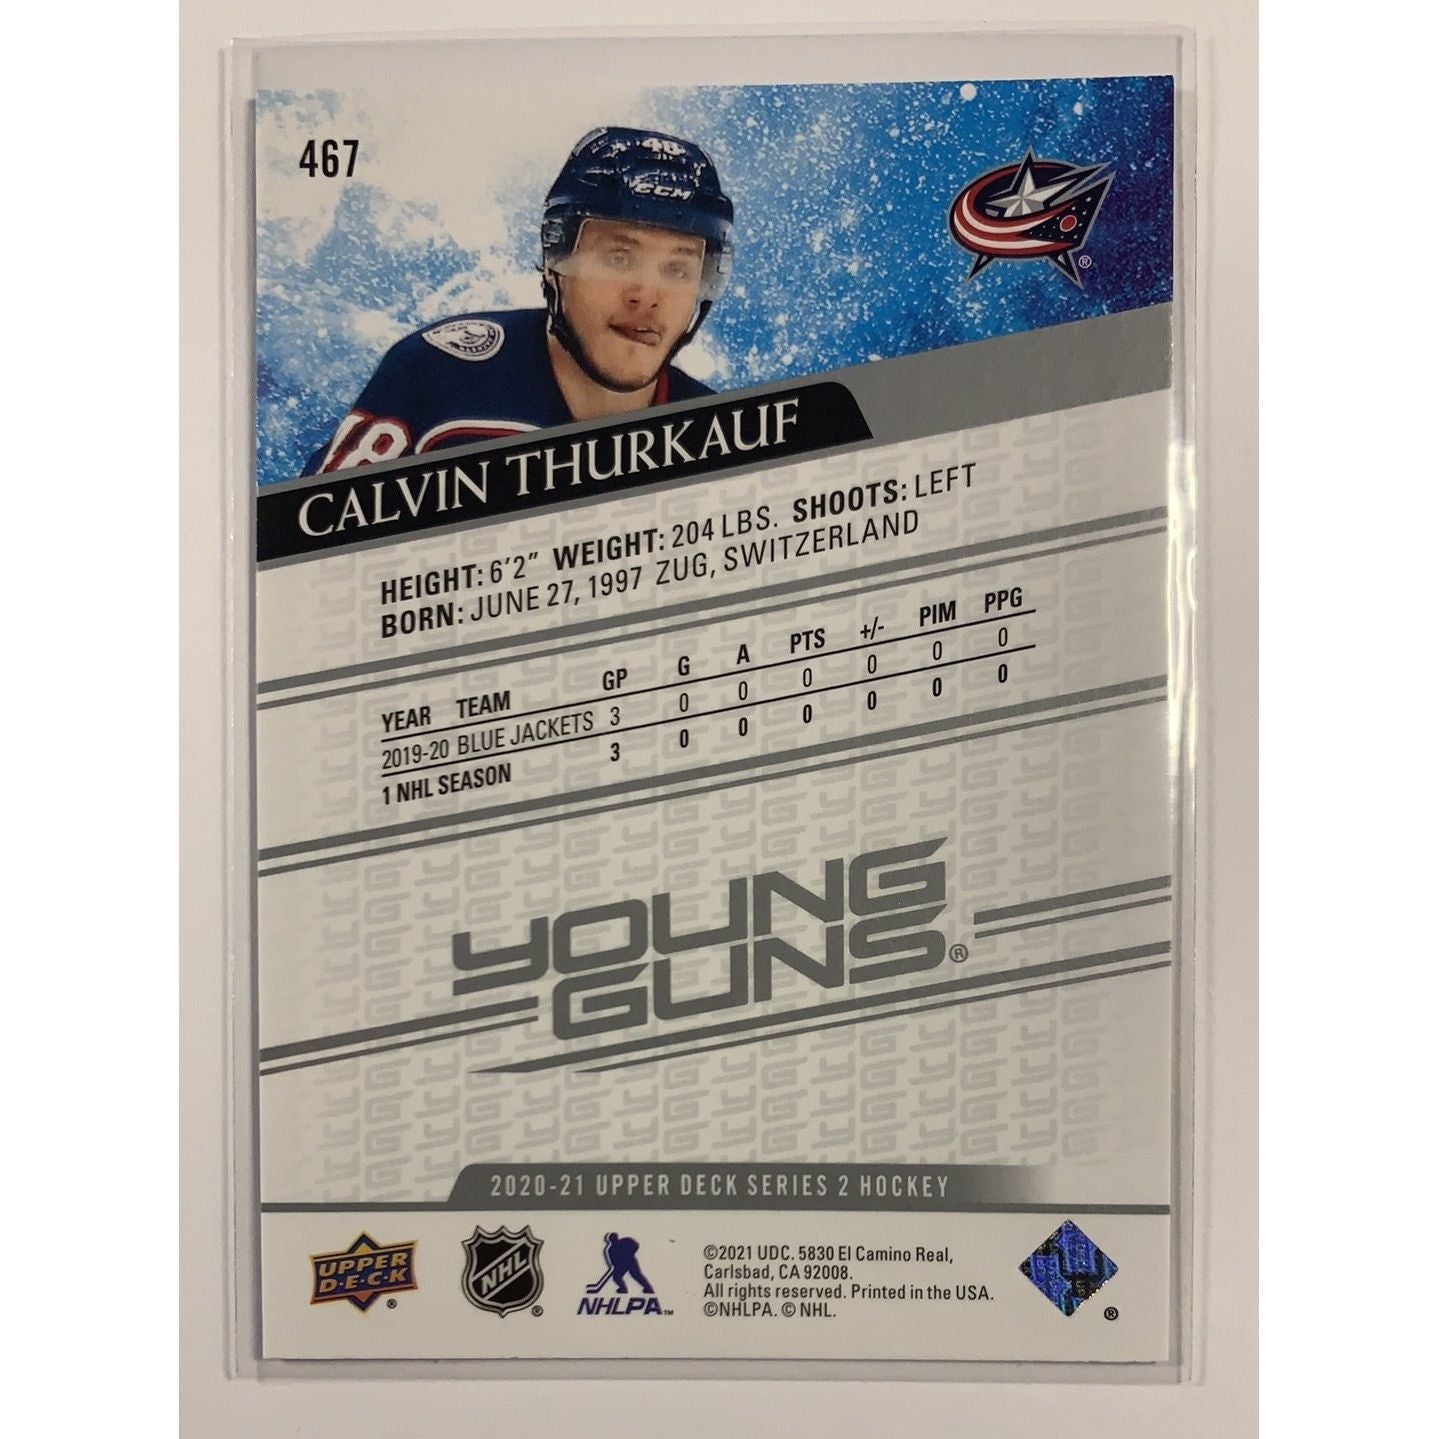  2020-21 Upper Deck Series 2 Calvin Thurkauf Young Guns  Local Legends Cards & Collectibles